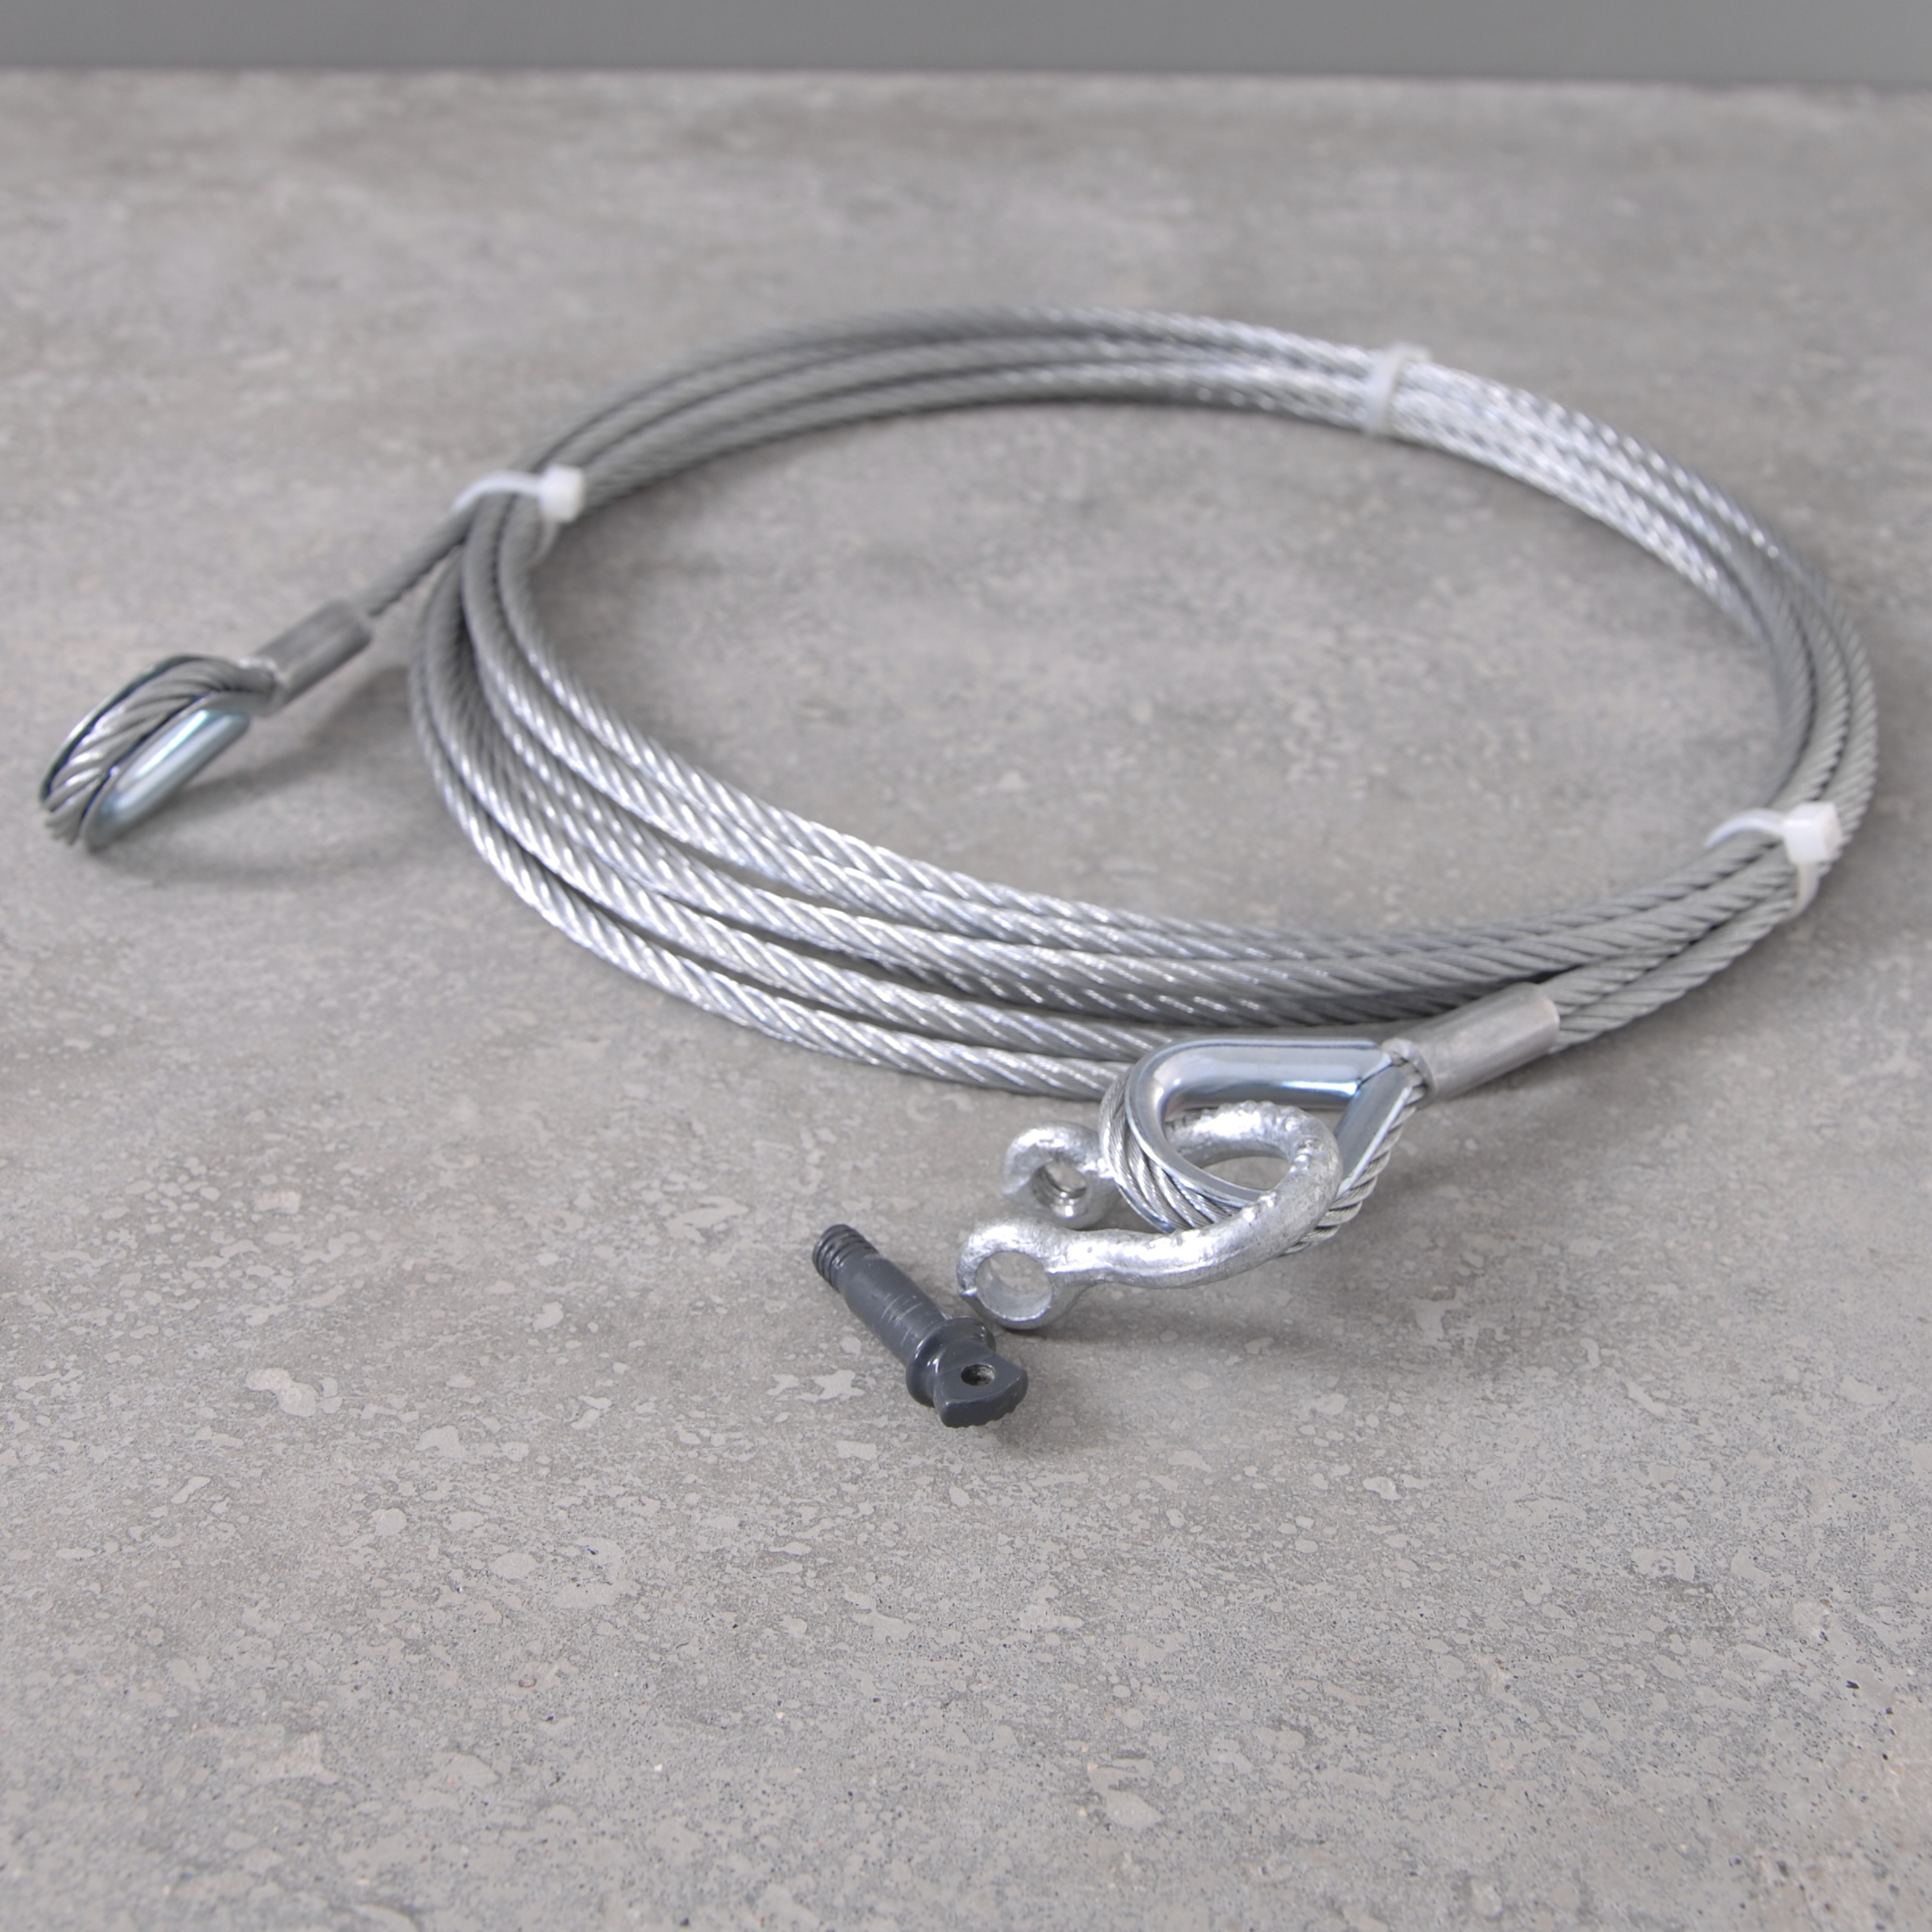 2 x Sicherungs Stahlseil mit Verbindungs Kauschen Seil 